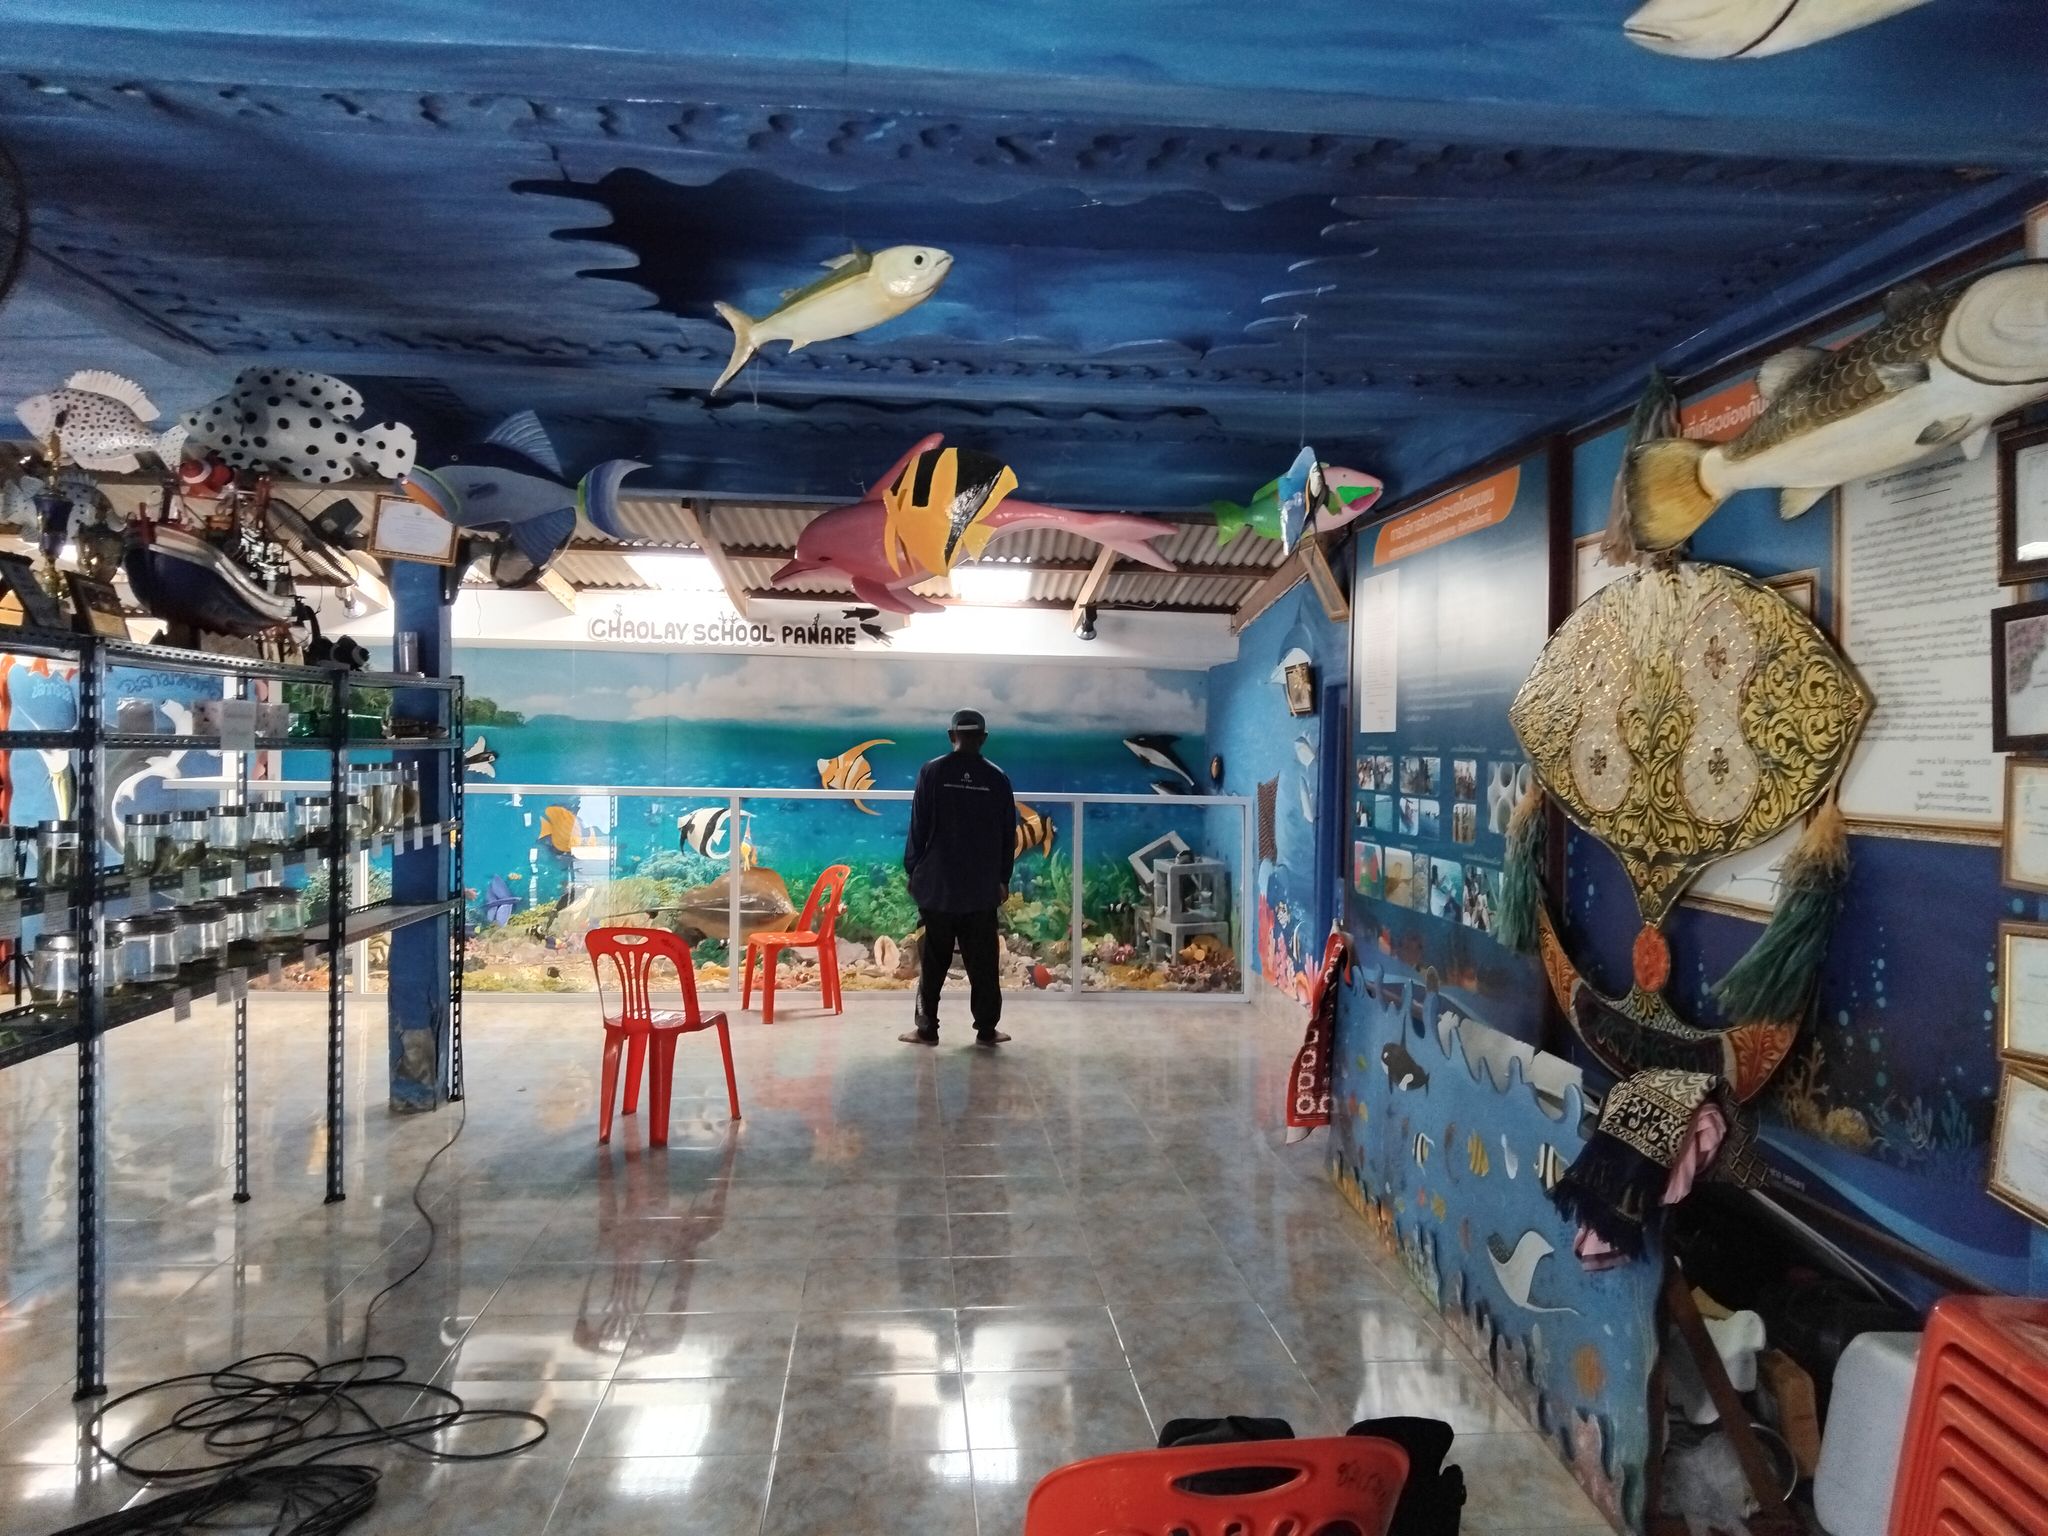 “โรงเรียนชาวเลปะนาเระ” จากชายหาดสู่ศูนย์กลางการเรียนรู้และท่องเที่ยว ปัตตานี